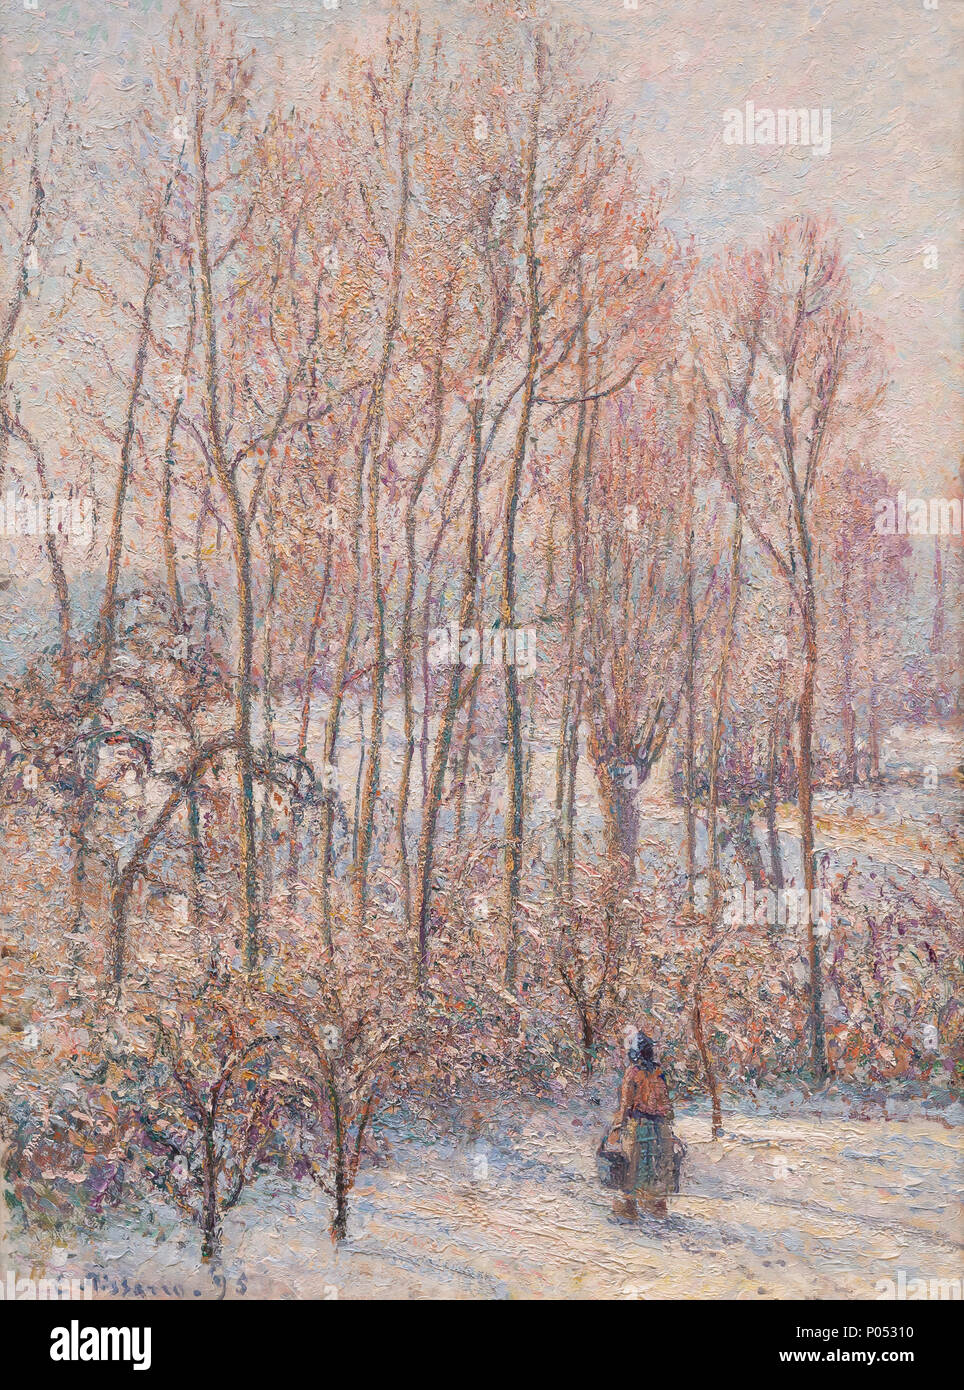 La luz del sol de la mañana en la nieve, Eragny-sur-Epte, Camille Pissarro, 1895, Museum of Fine Arts, Boston, Mass, Estados Unidos, América del Norte Foto de stock